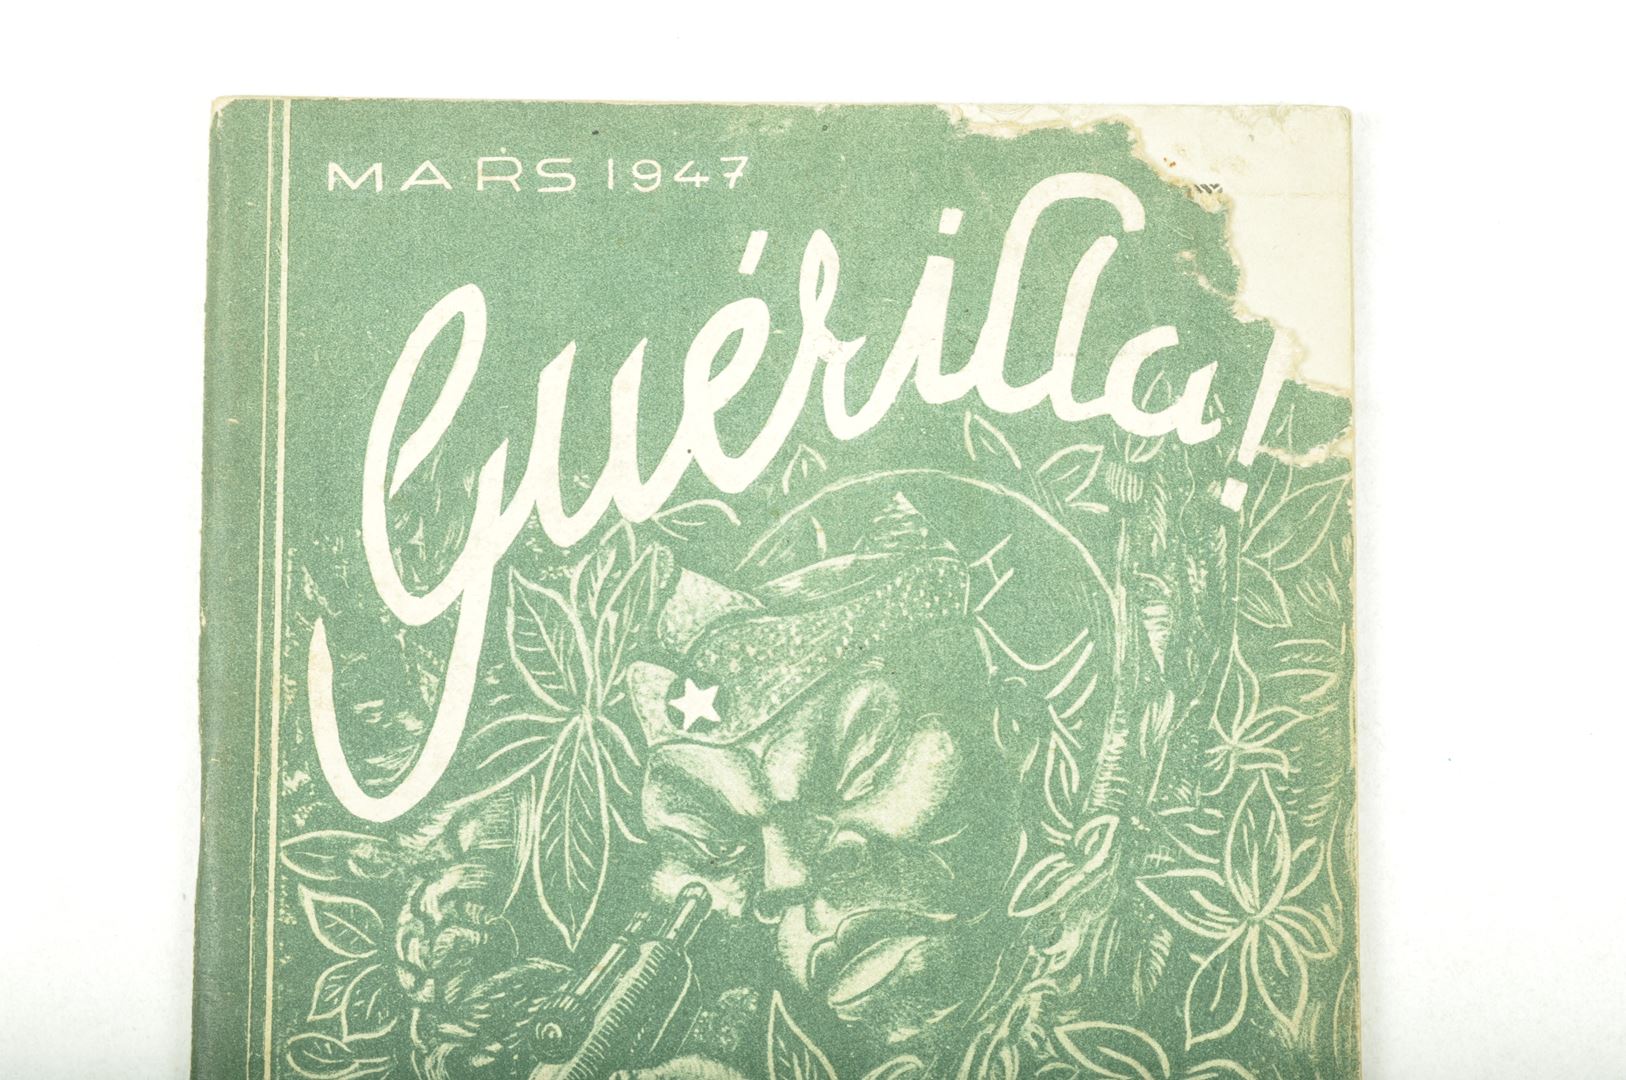 Manuel "Guérilla" N° 1 Mars 1947